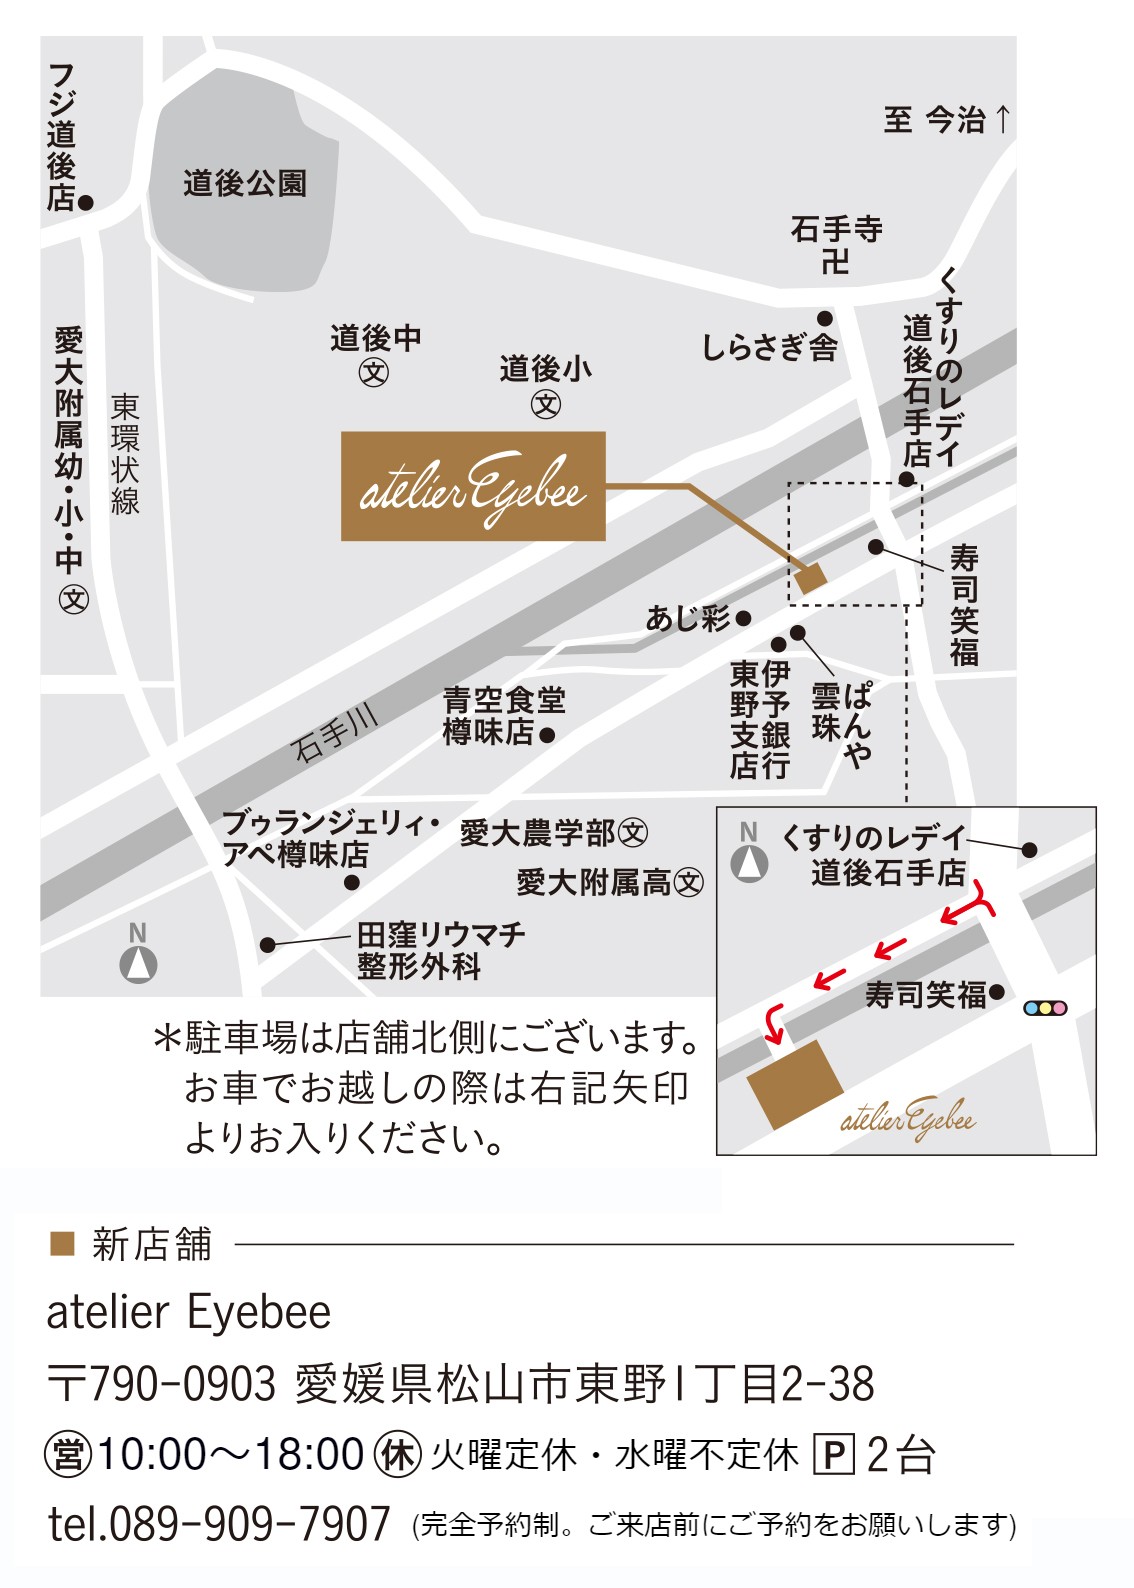 atelier Eyebee SHOP | atelier Eyebee(アトリエアイビー) Joy Vision ...